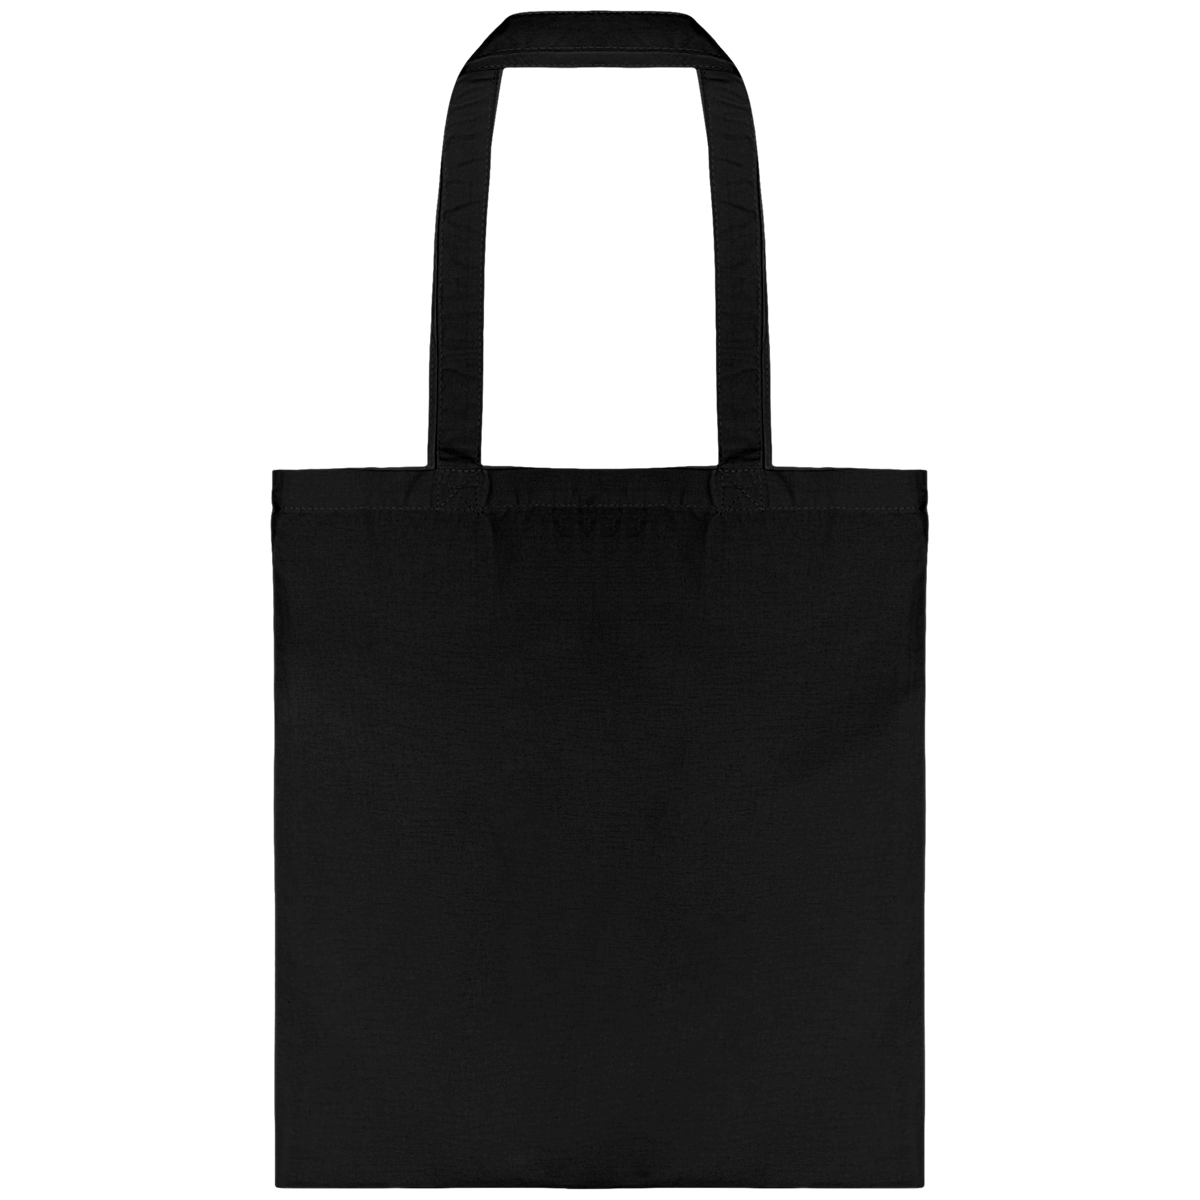 Personnalisez Votre Tote Bag Avec Tunetoo Black